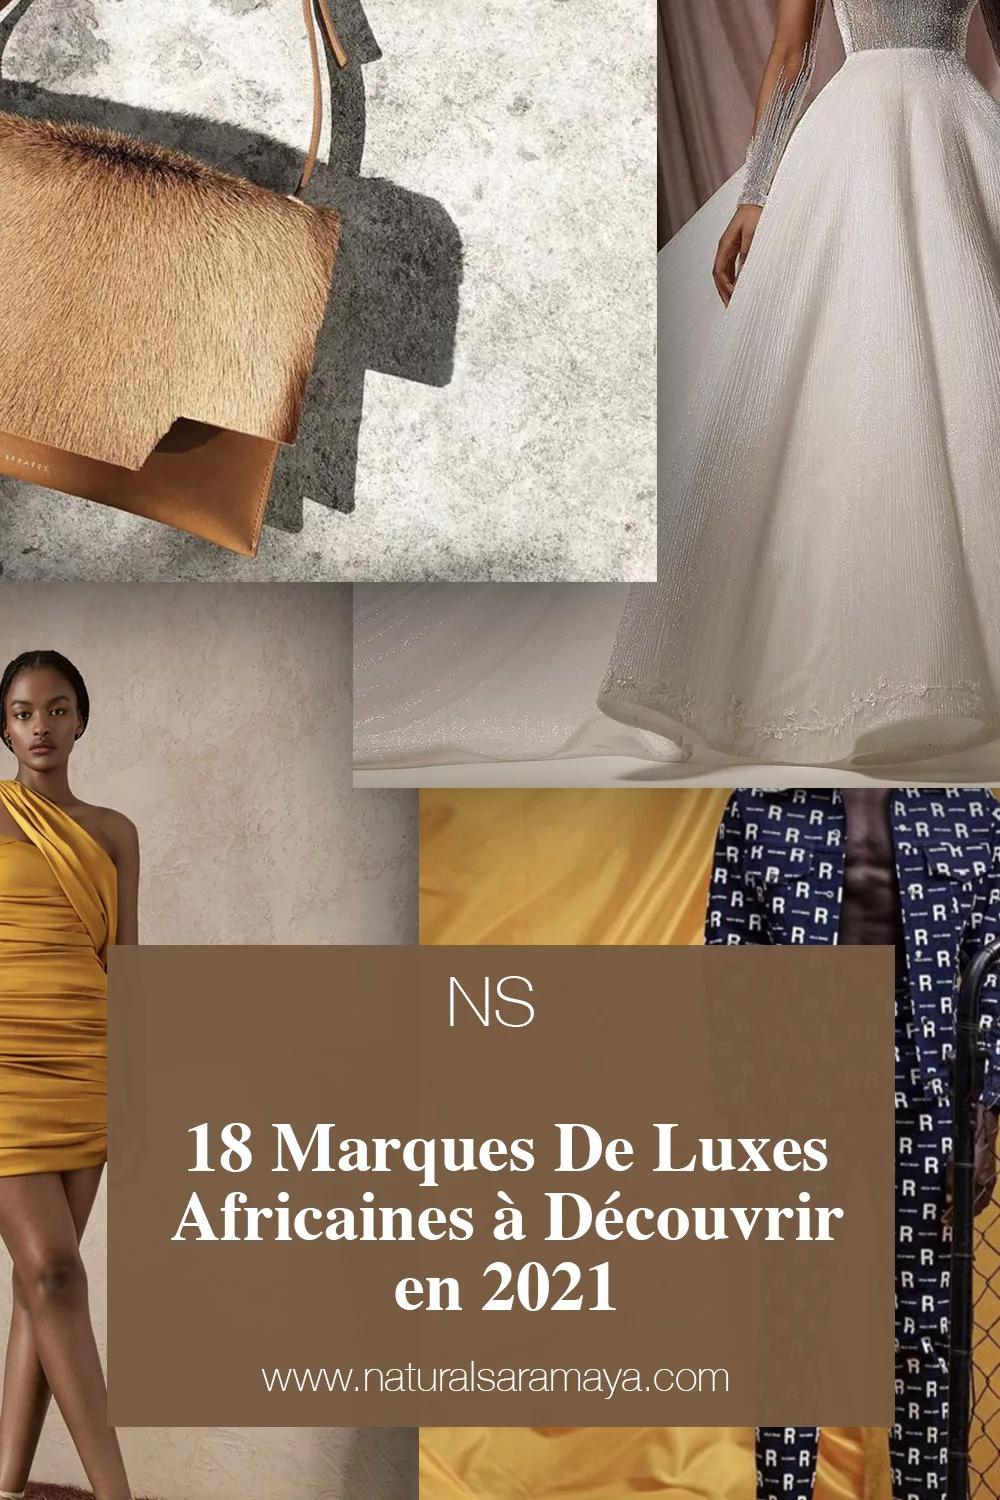 18 Marques De Luxes Africaines à Découvrir en 2021.